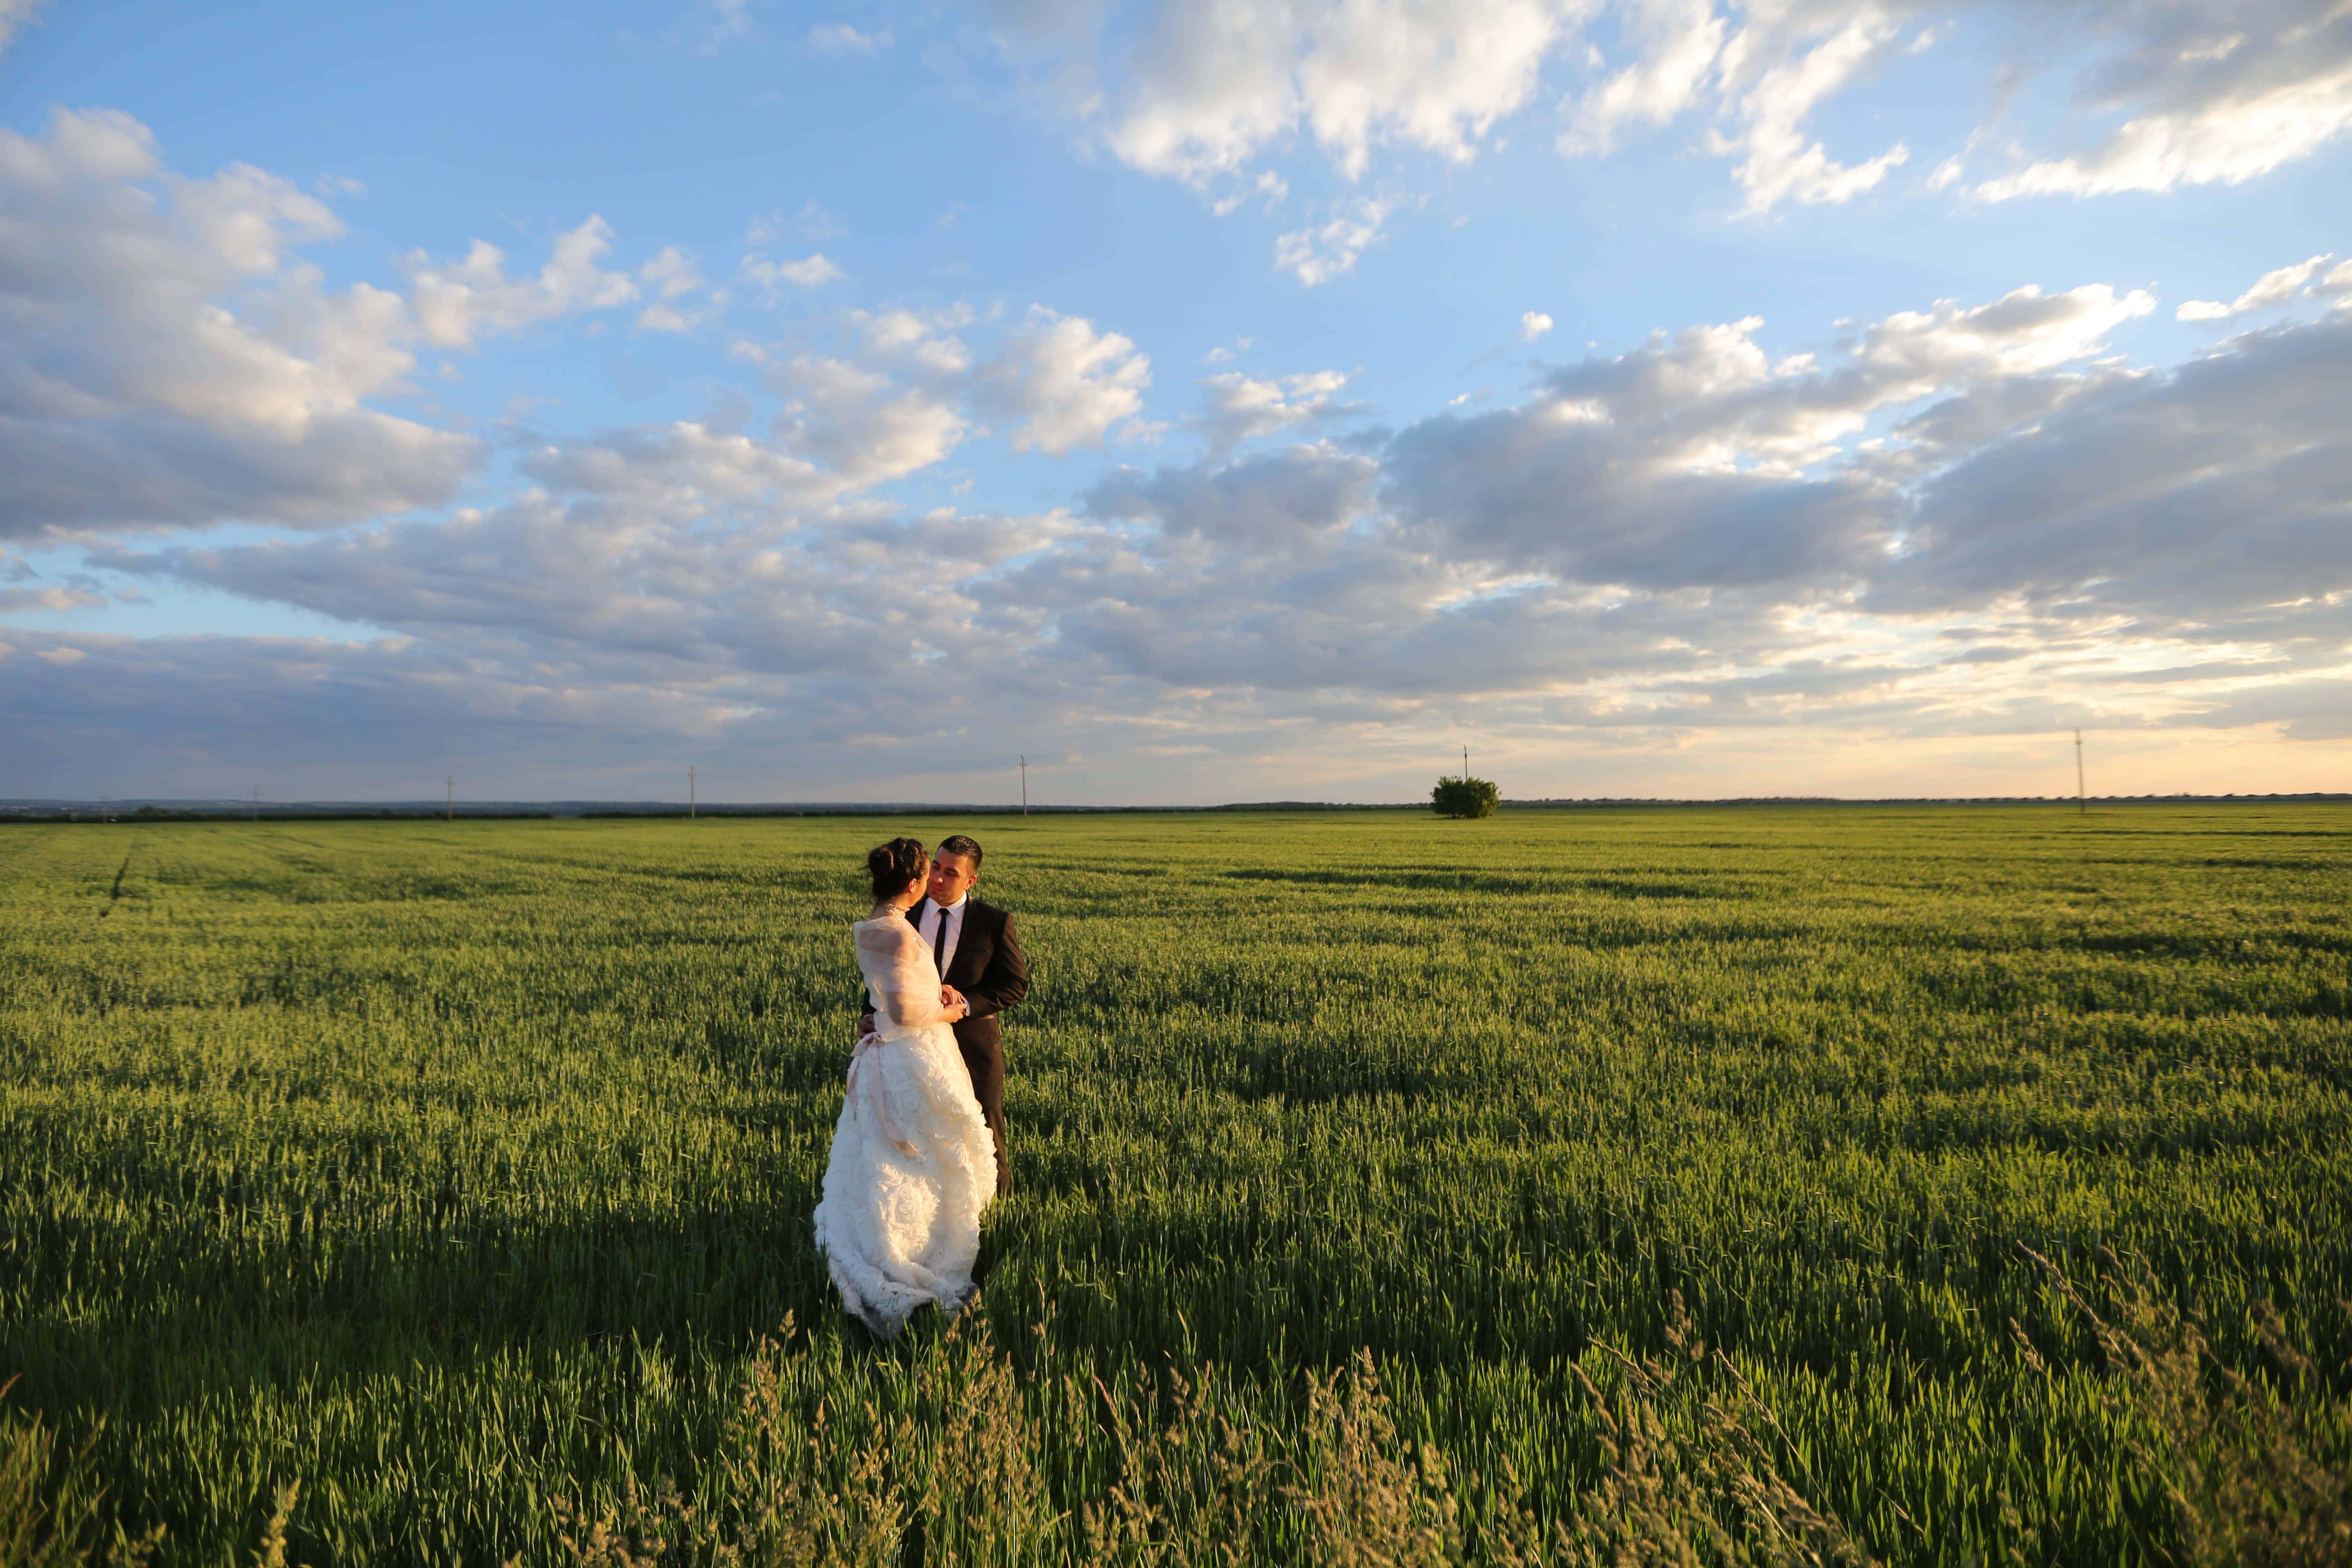 Провожала поля мужа. Жена в поле. Фотосессия пары в поле пшеницы. Свадьба в пшенице. В поле с мужем.